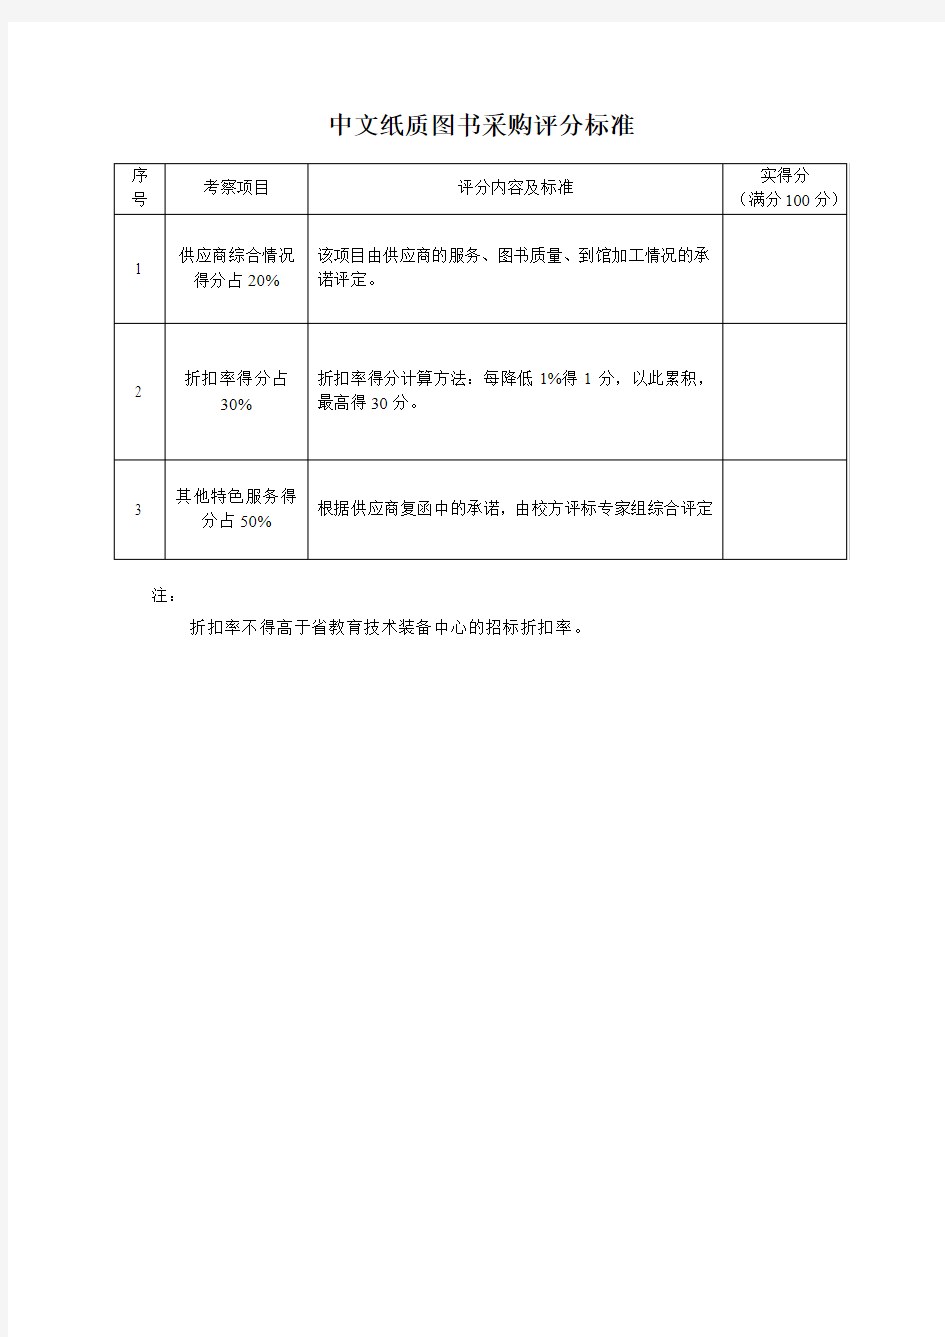 中文纸质图书采购评分标准